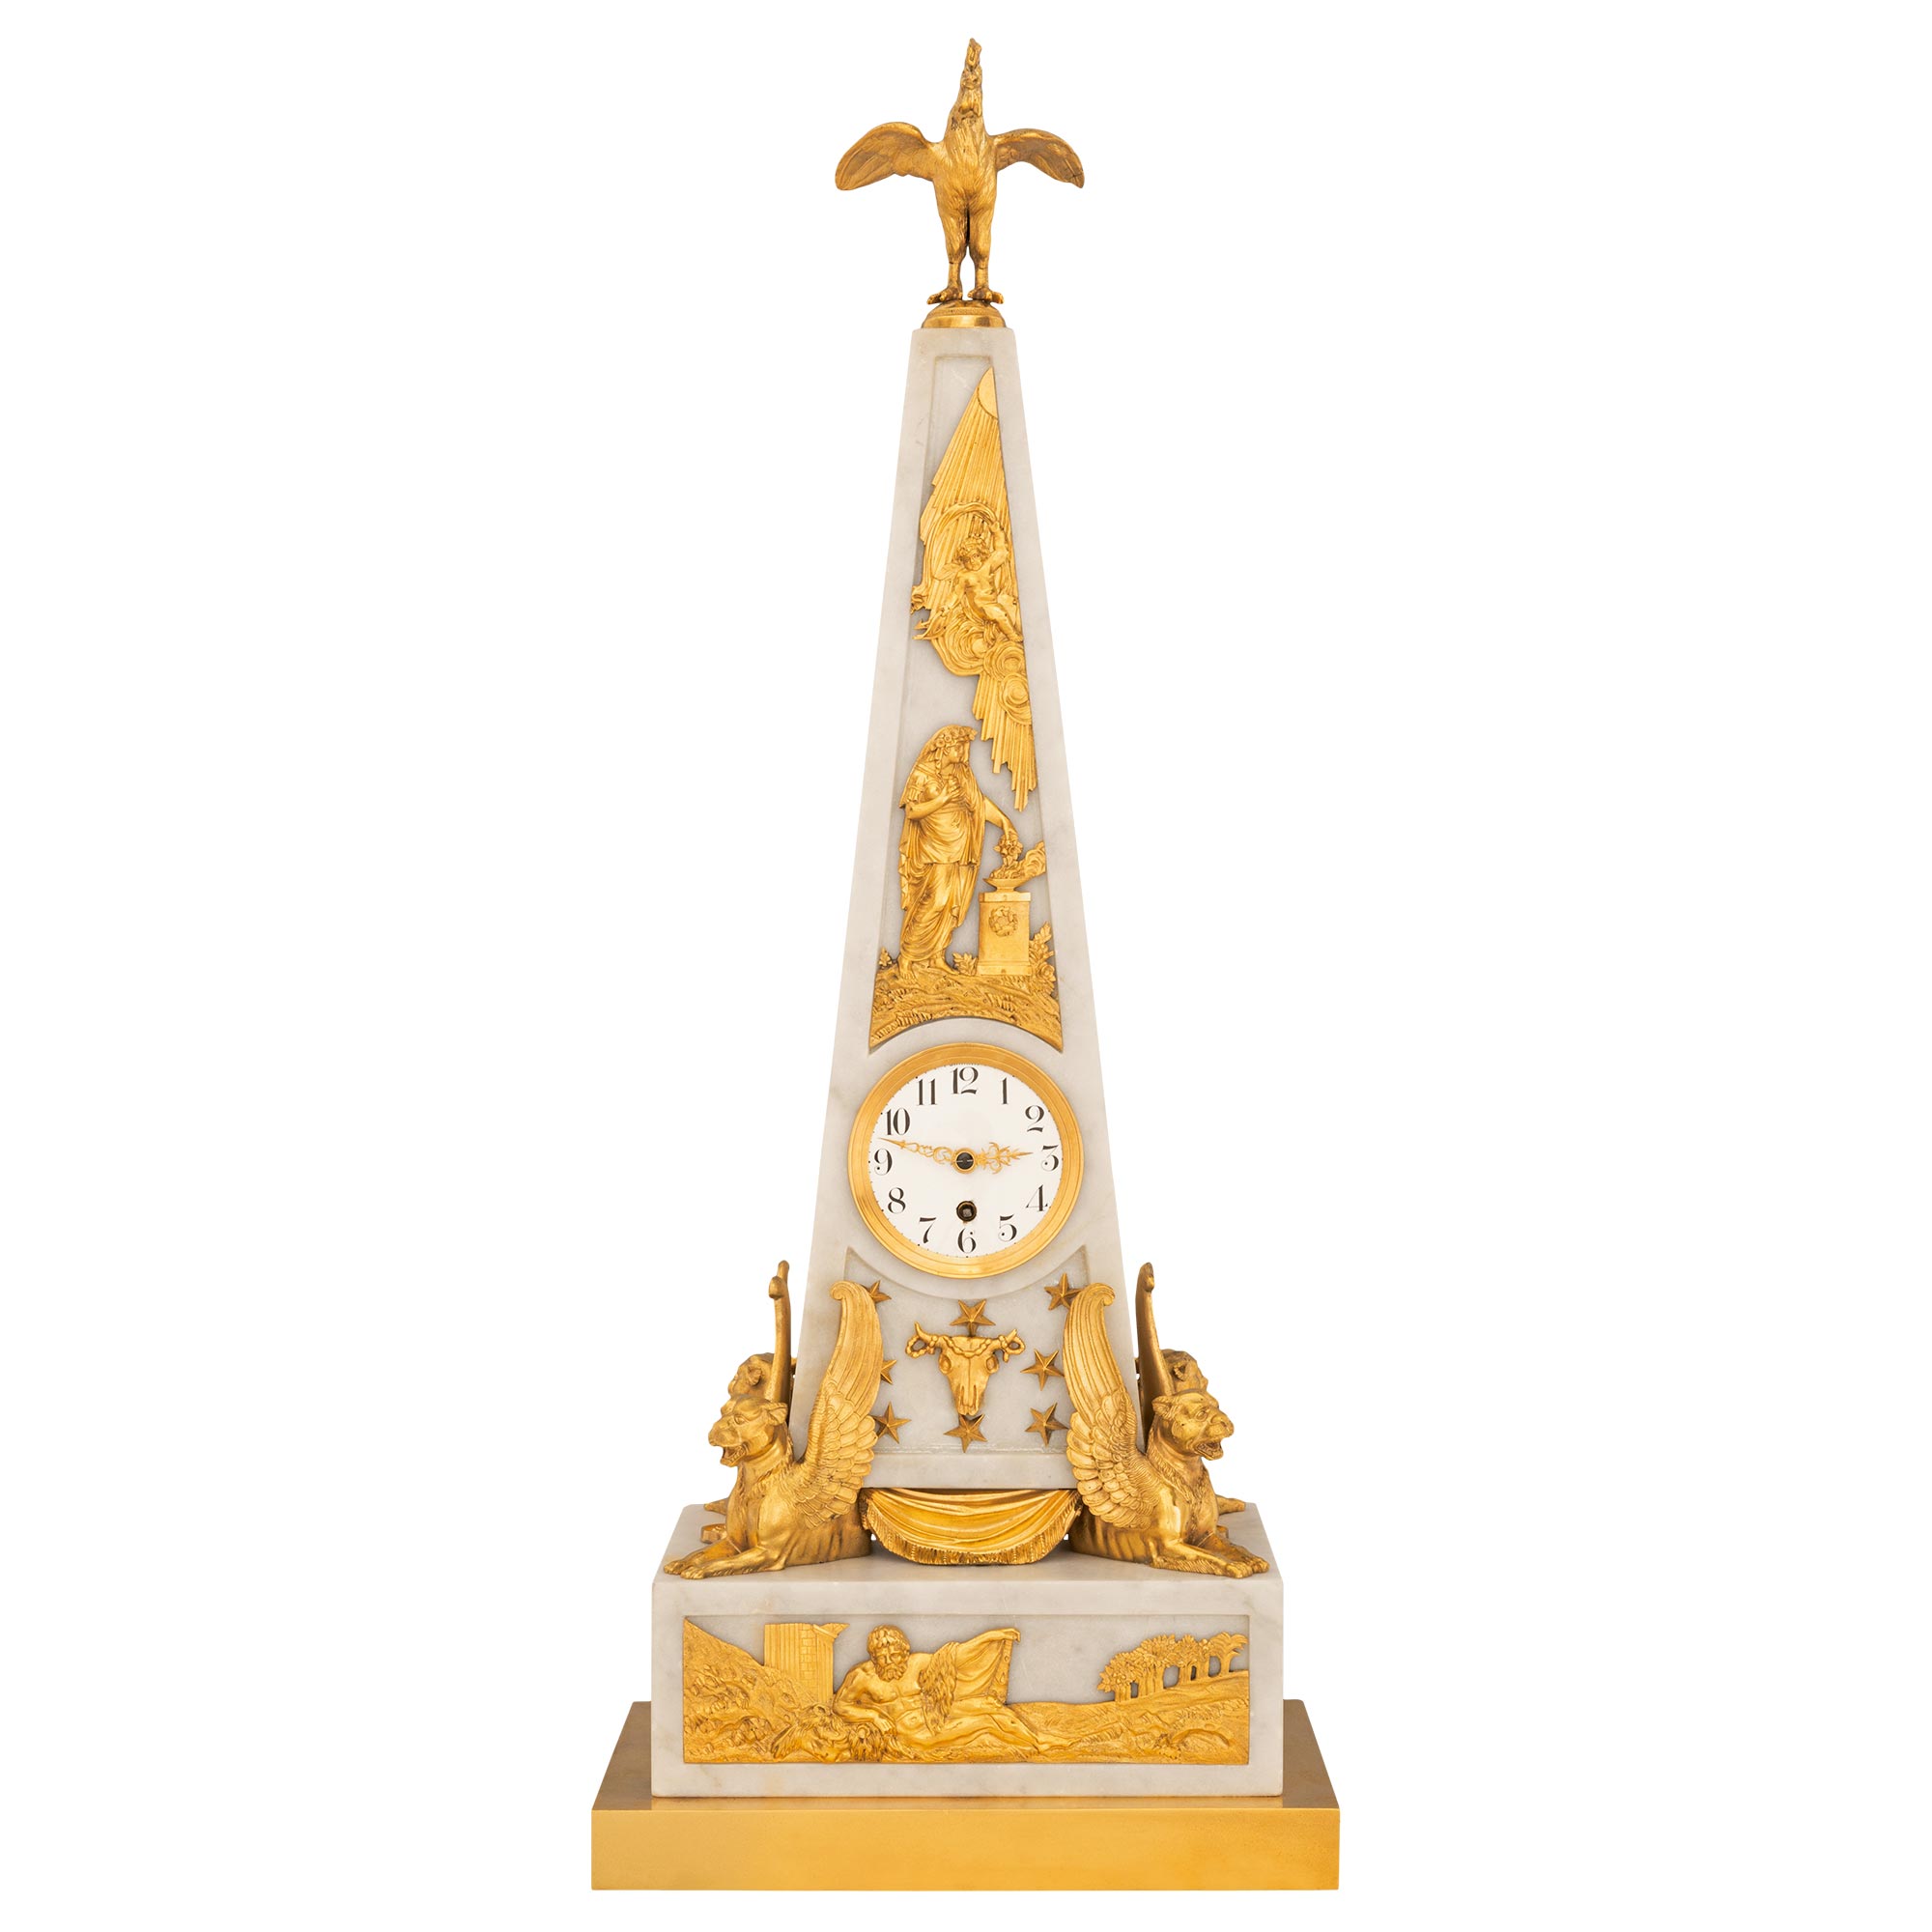 Horloge néoclassique française du 19ème siècle en forme d'obélisque en marbre et bronze doré